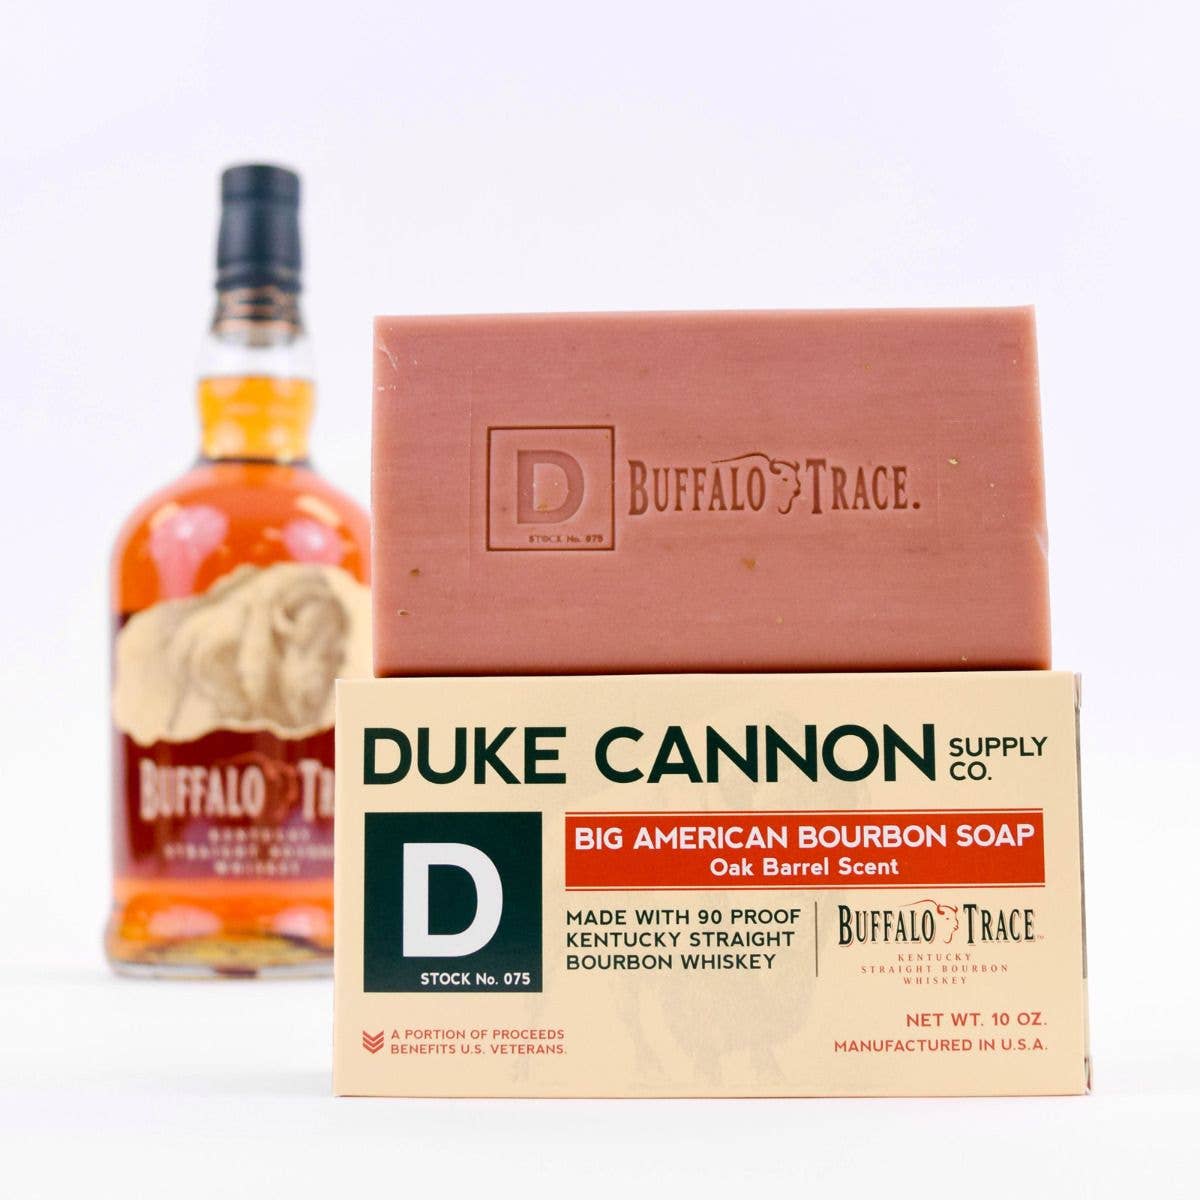 "Duke Cannon" Big American Bourbon Soap